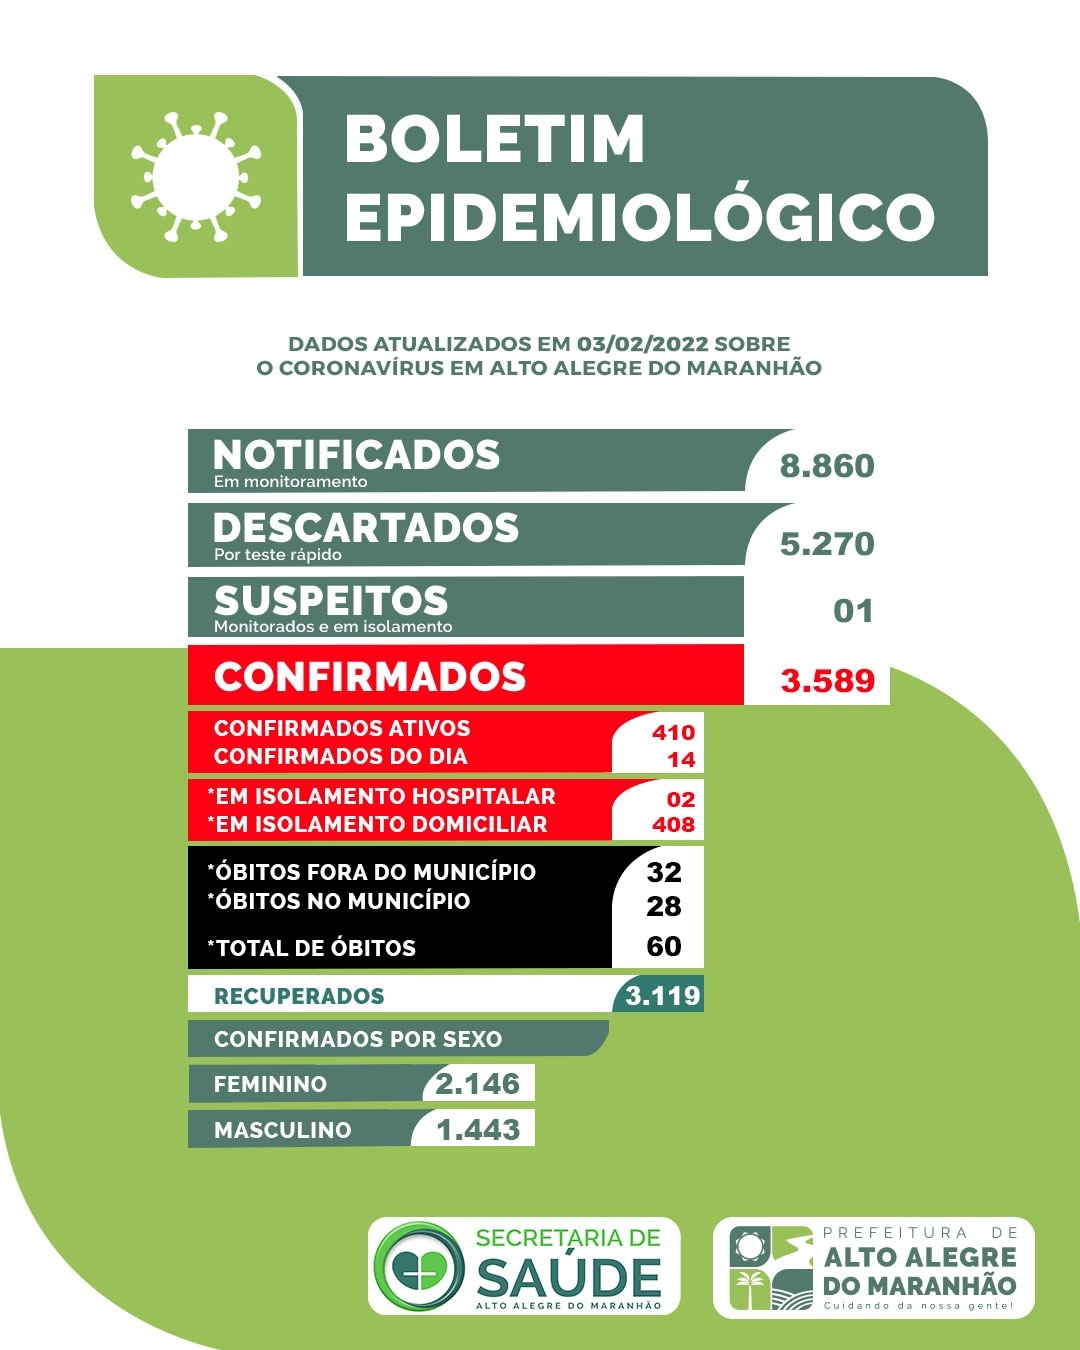 Boletim epidemiológico atualizado de Alto Alegre do Maranhão